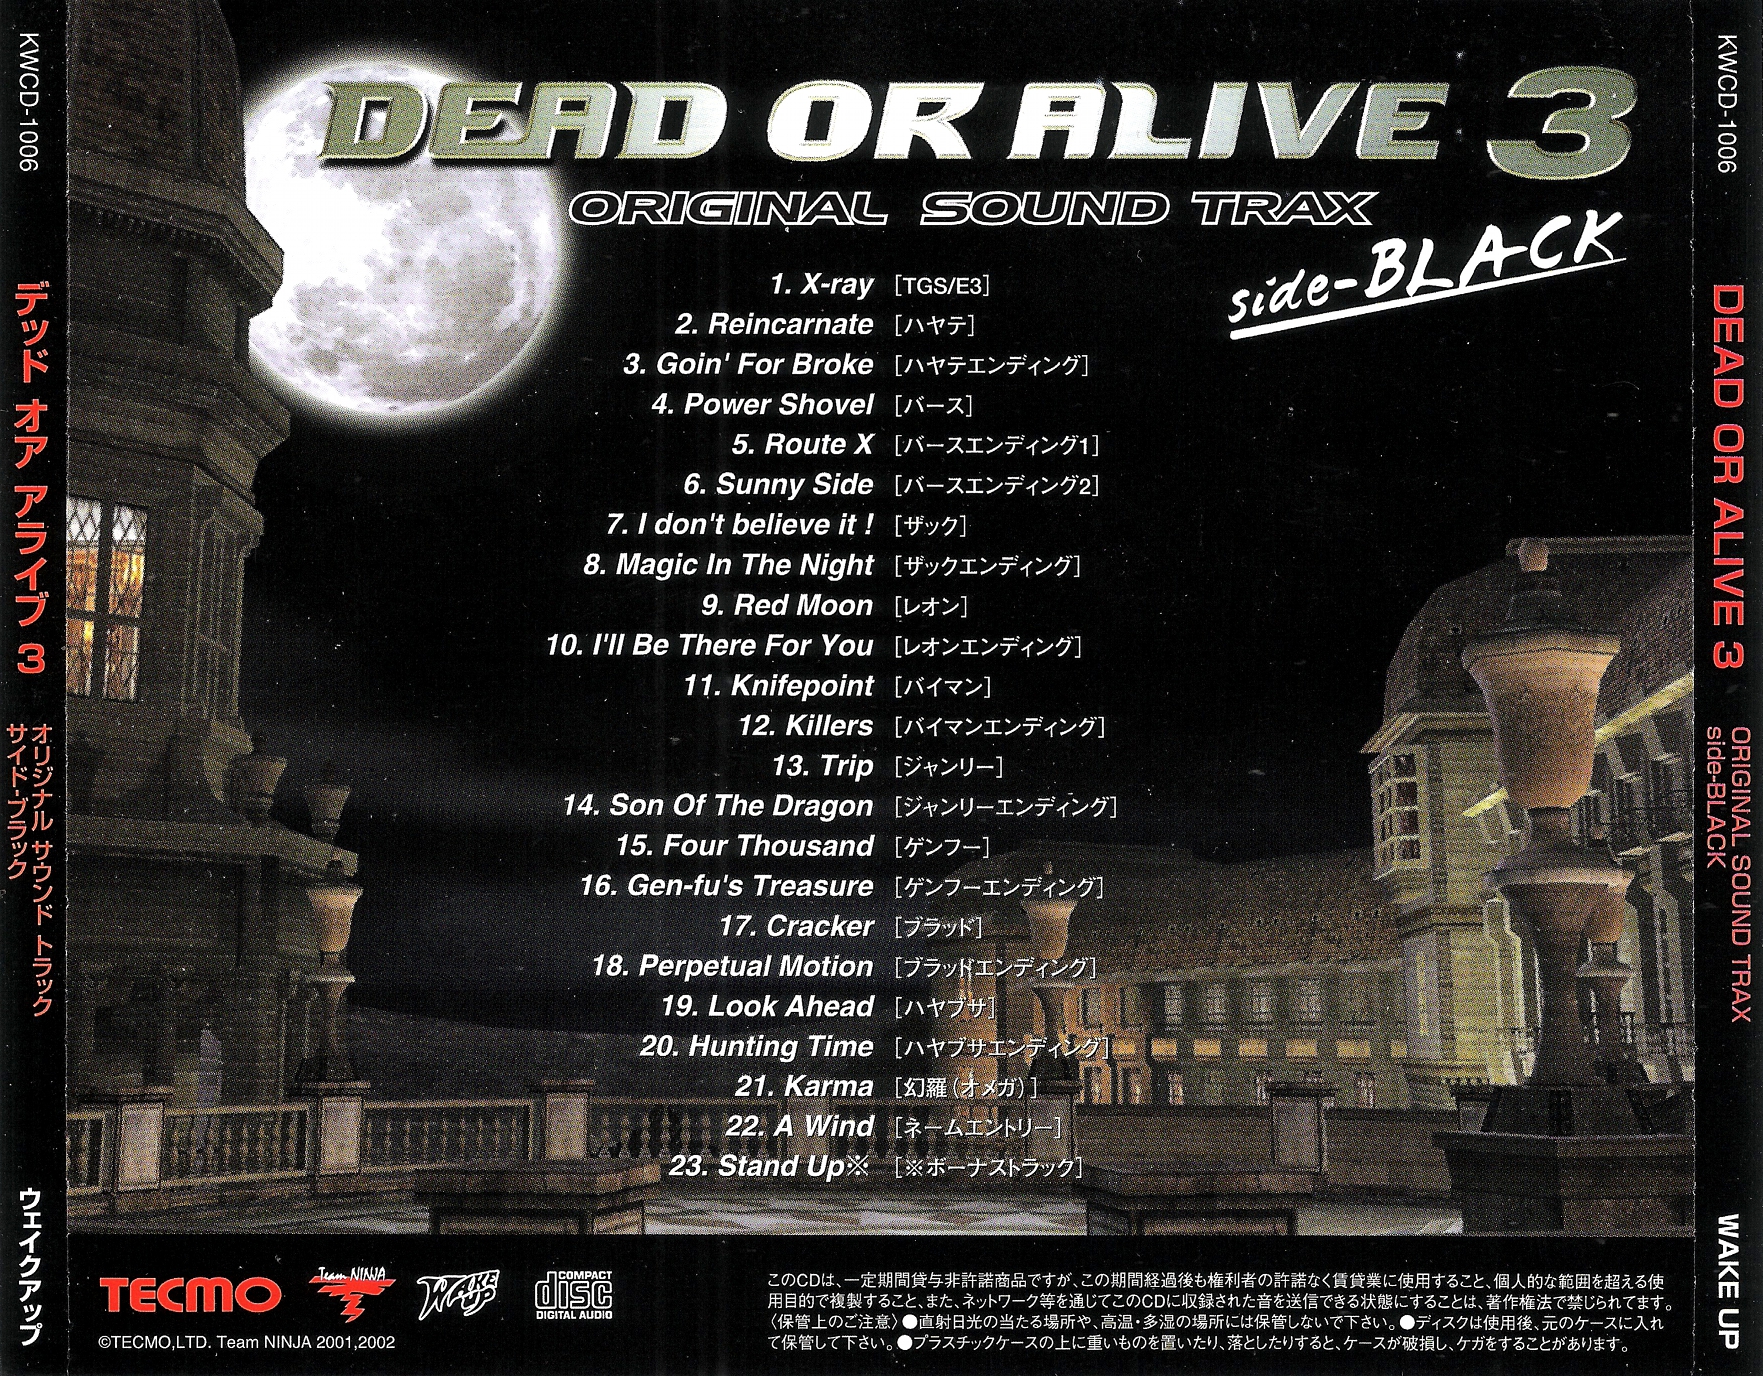 DEAD OR ALIVE 3 ORIGINAL SOUND TRAX (2002) MP3 - Download DEAD OR ALIVE 3  ORIGINAL SOUND TRAX (2002) Soundtracks for FREE!